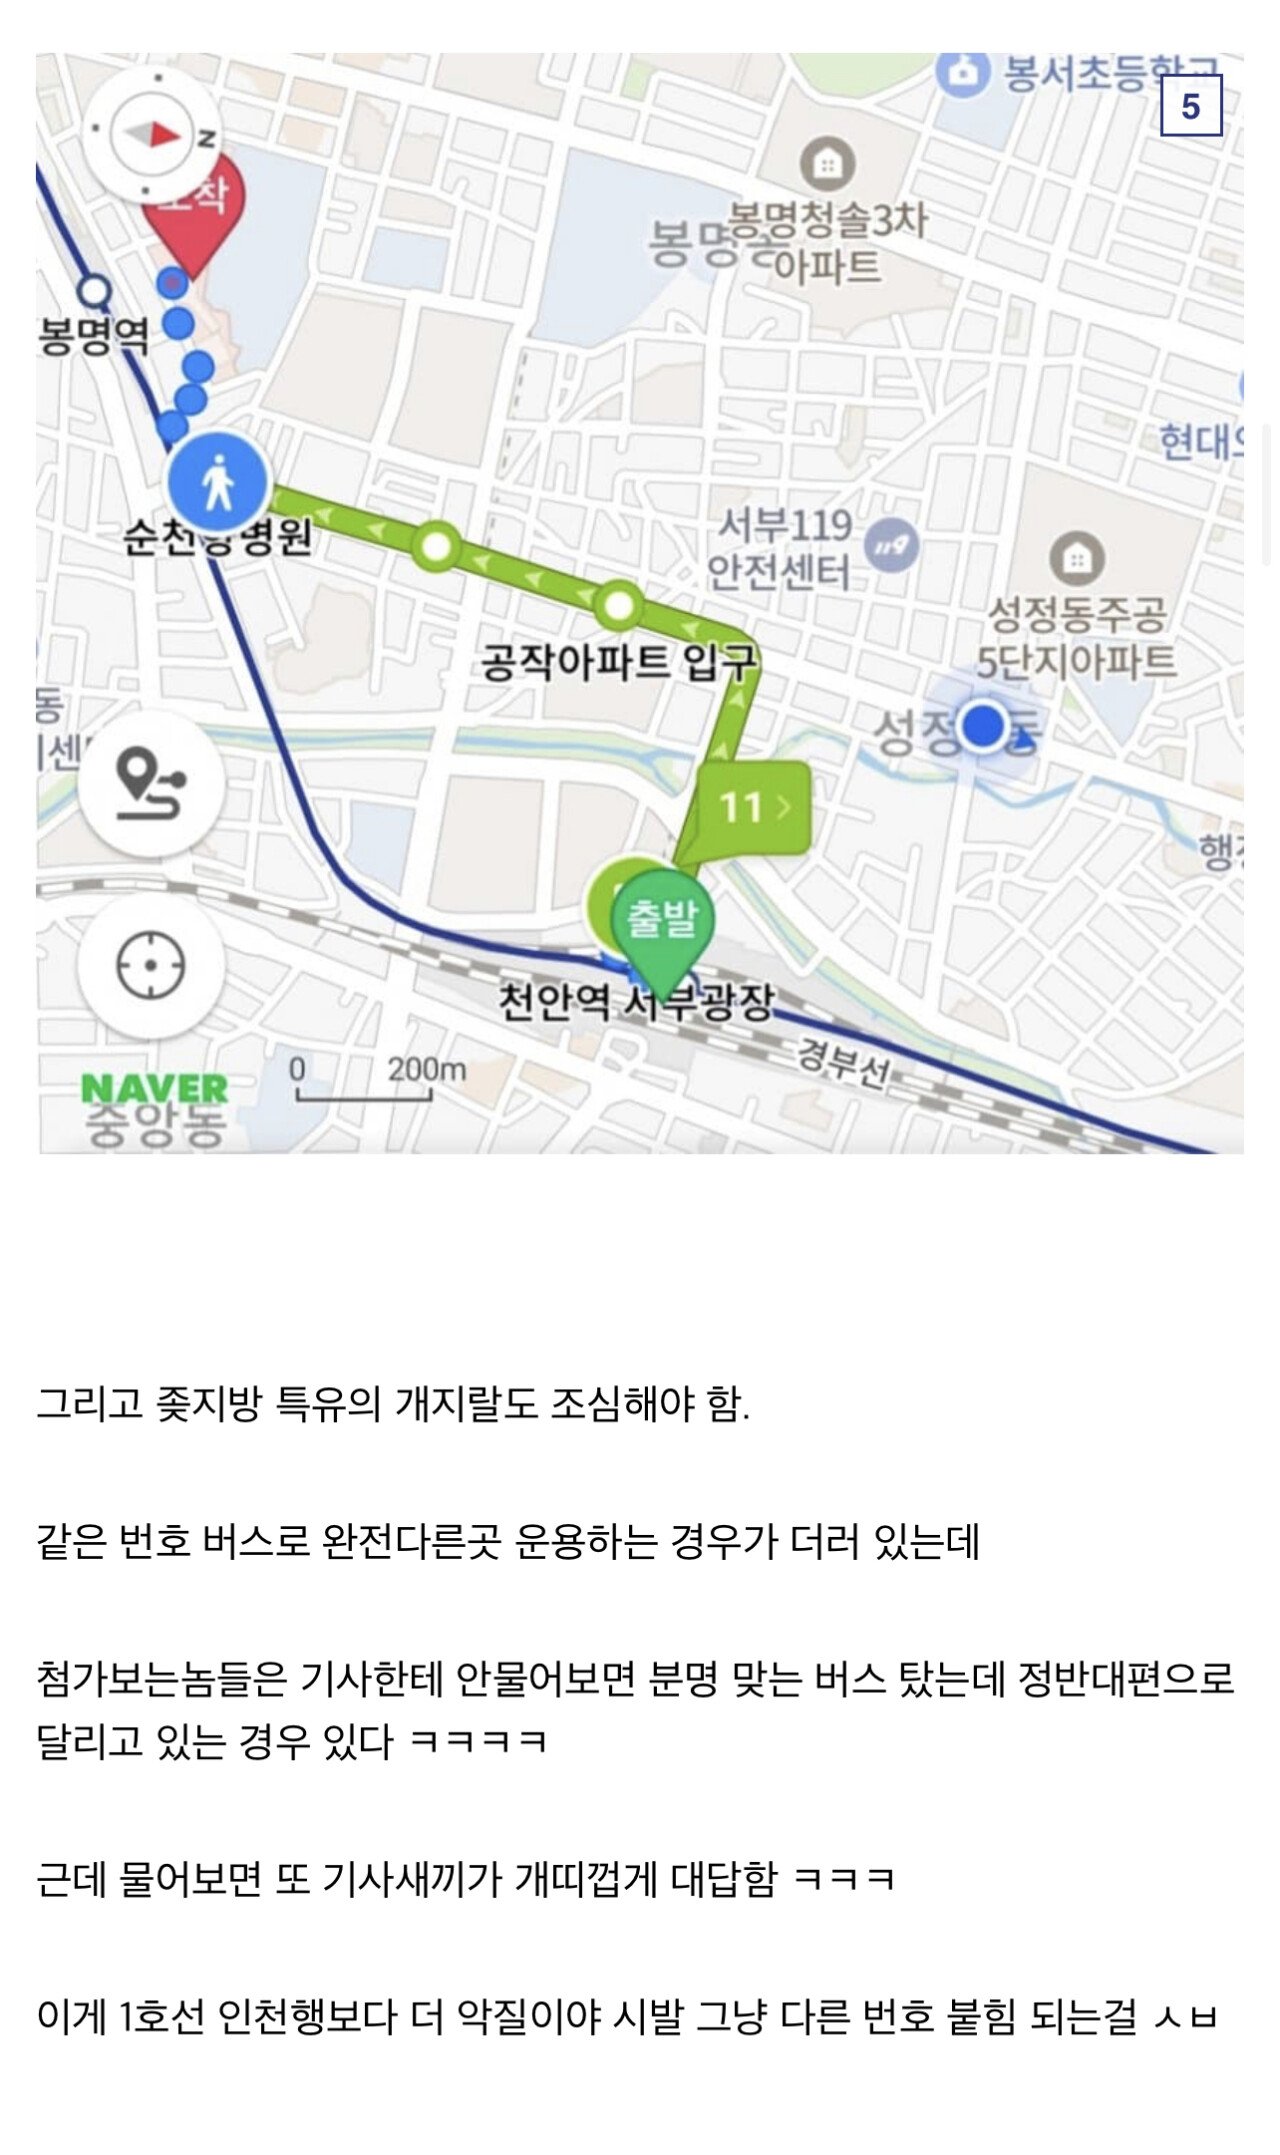 디씨인이 말하는 서울 지하철 1호선이 최악인 이유.jpg